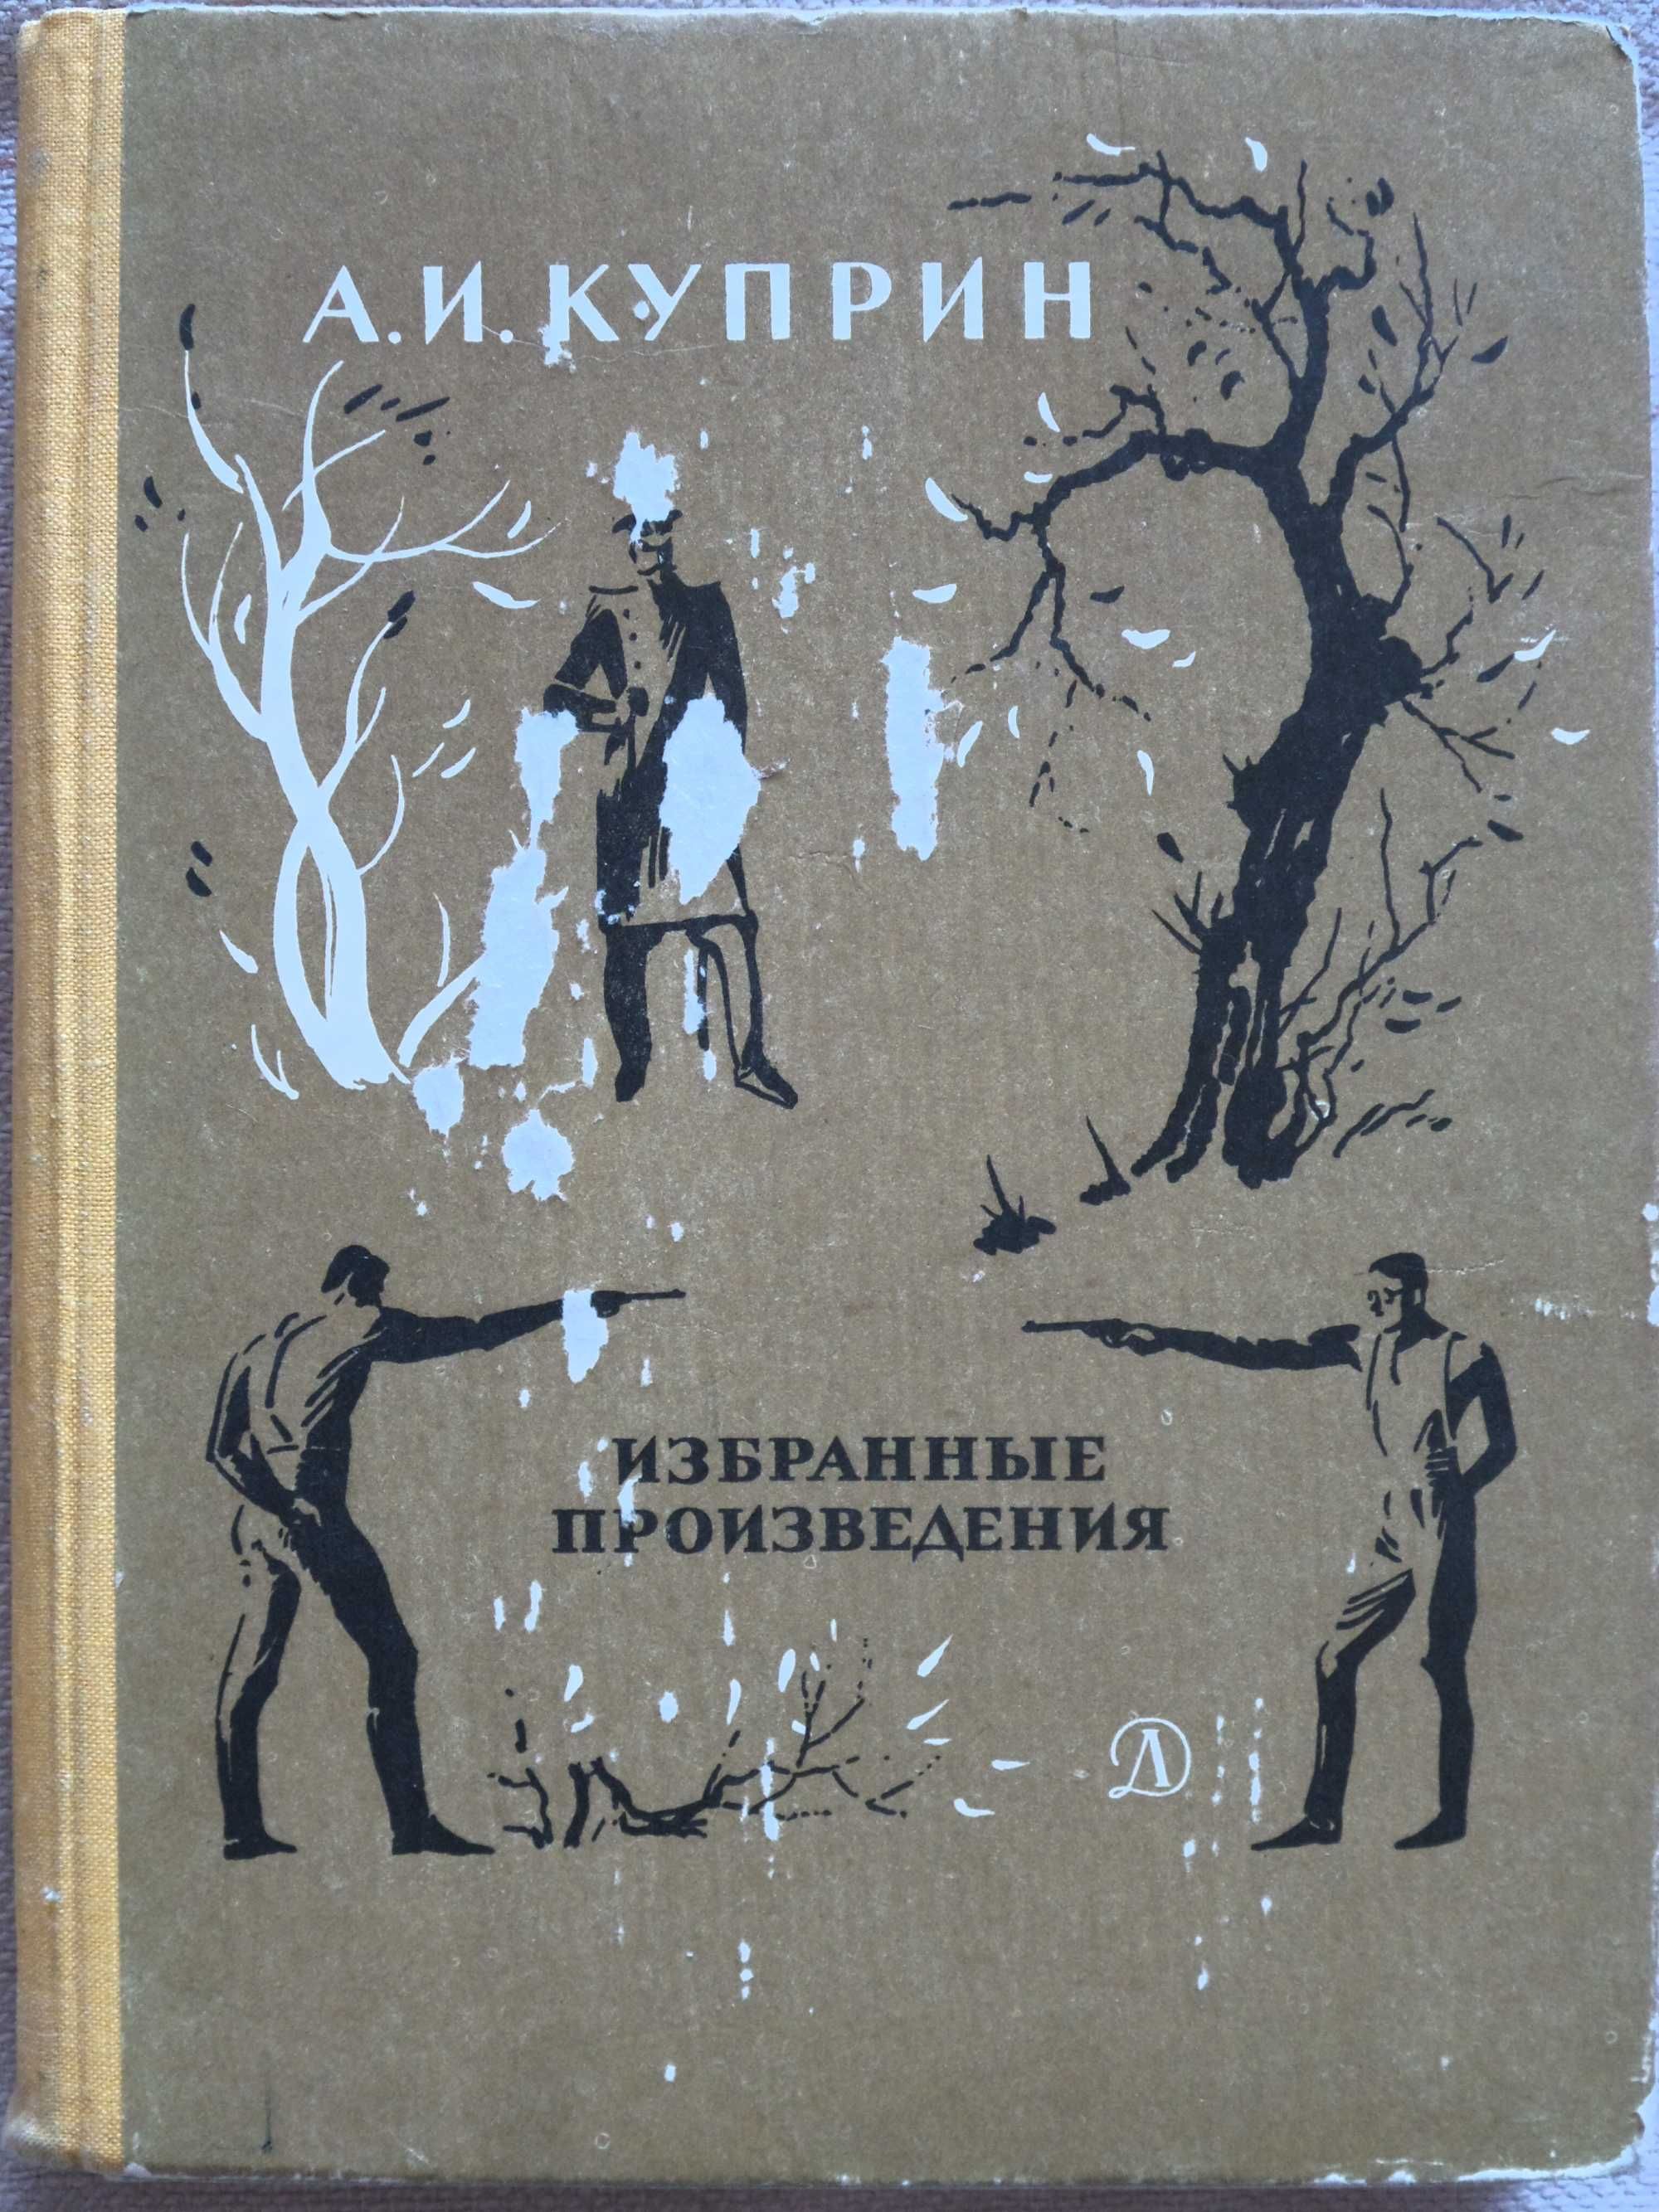 Книги советские из серии "Детская литература".